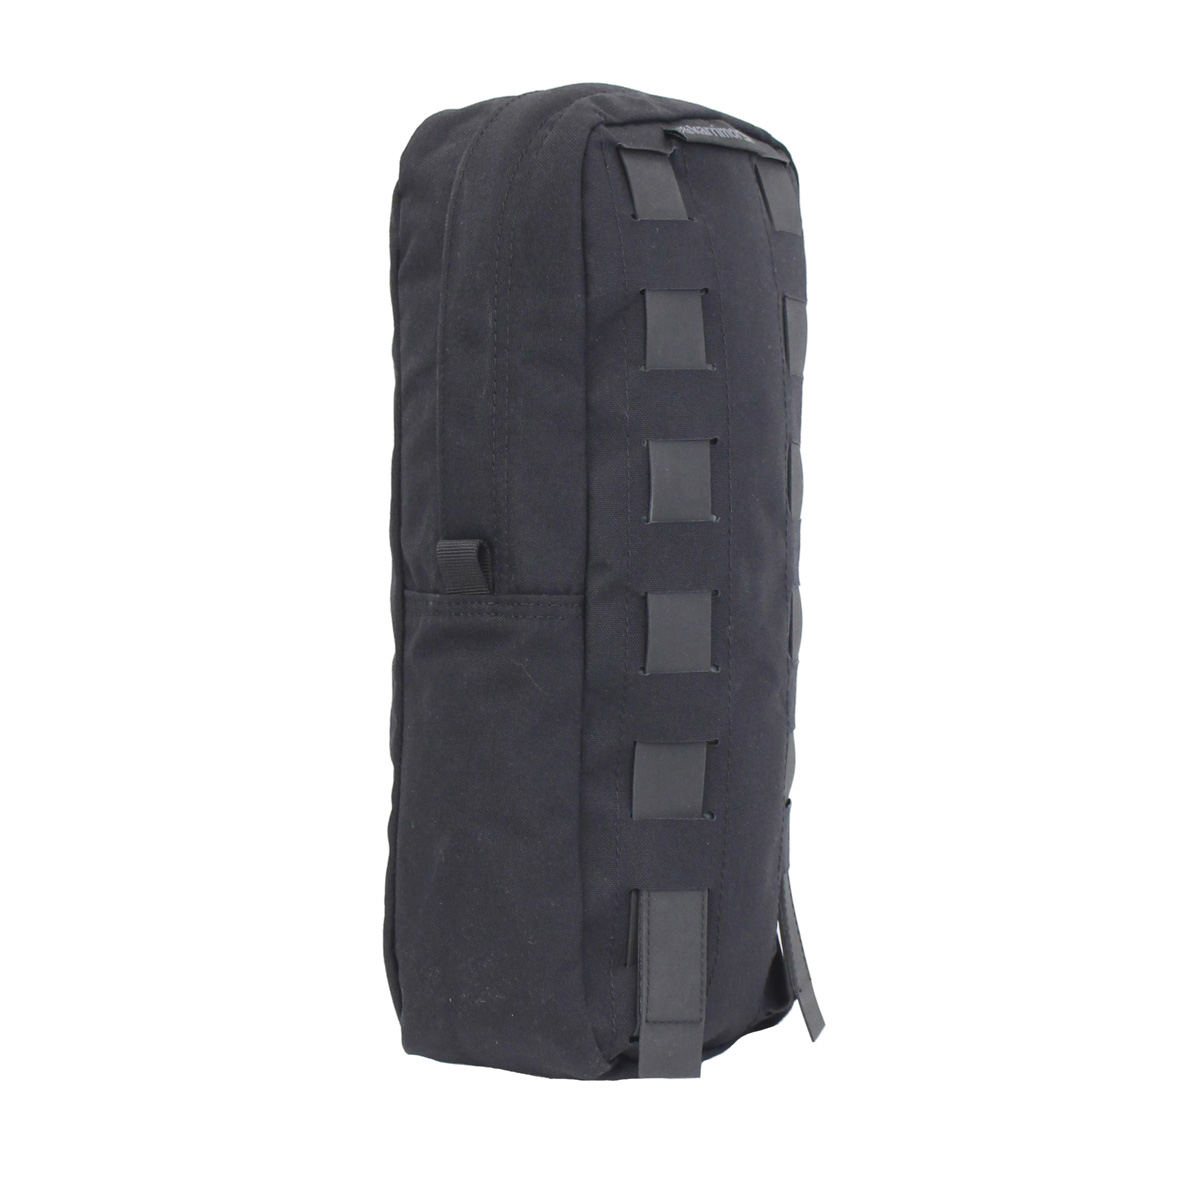 Izberite vrhunsko kakovostno stransko vojaško torbo Nordic 4L za vaš vojaški nahrbtnik. Torba je narejena iz trpežnega materiala in je idealna za shranjevanje vojaške opreme. Pridobite svojo torbo Karrimor SF zdaj!